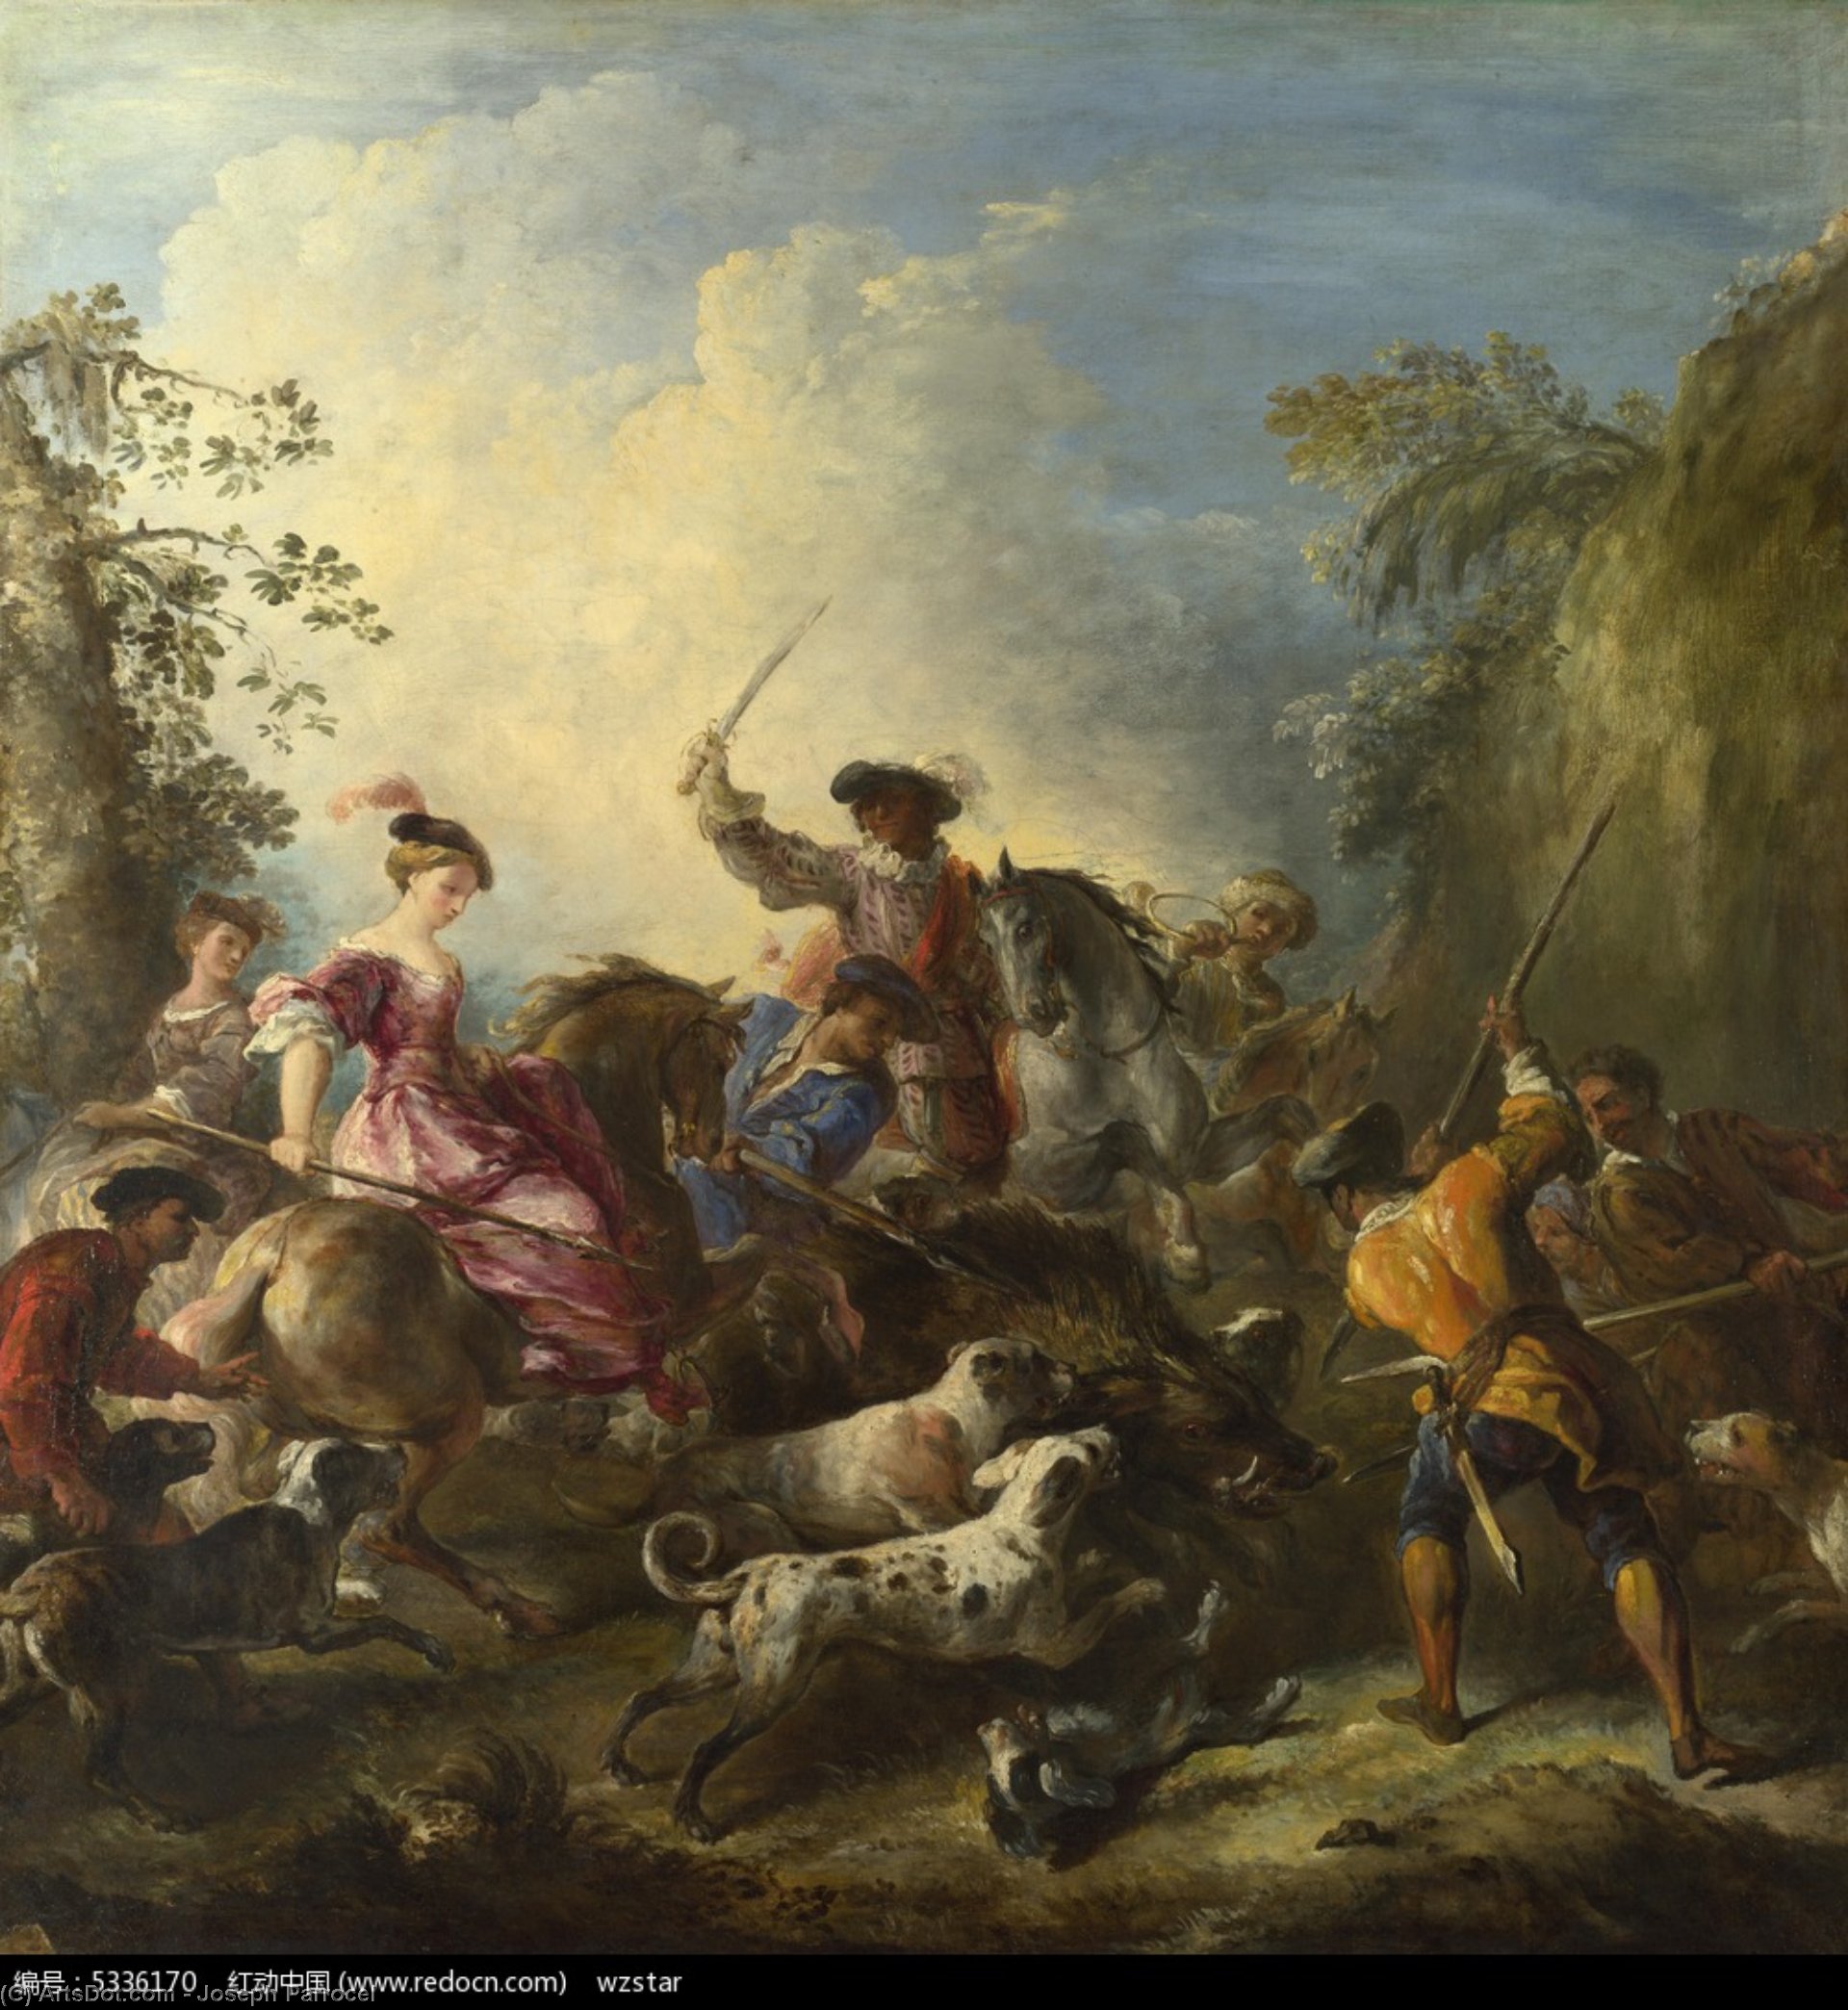 WikiOO.org - Encyclopedia of Fine Arts - Schilderen, Artwork Joseph Parrocel - The Boar Hunt